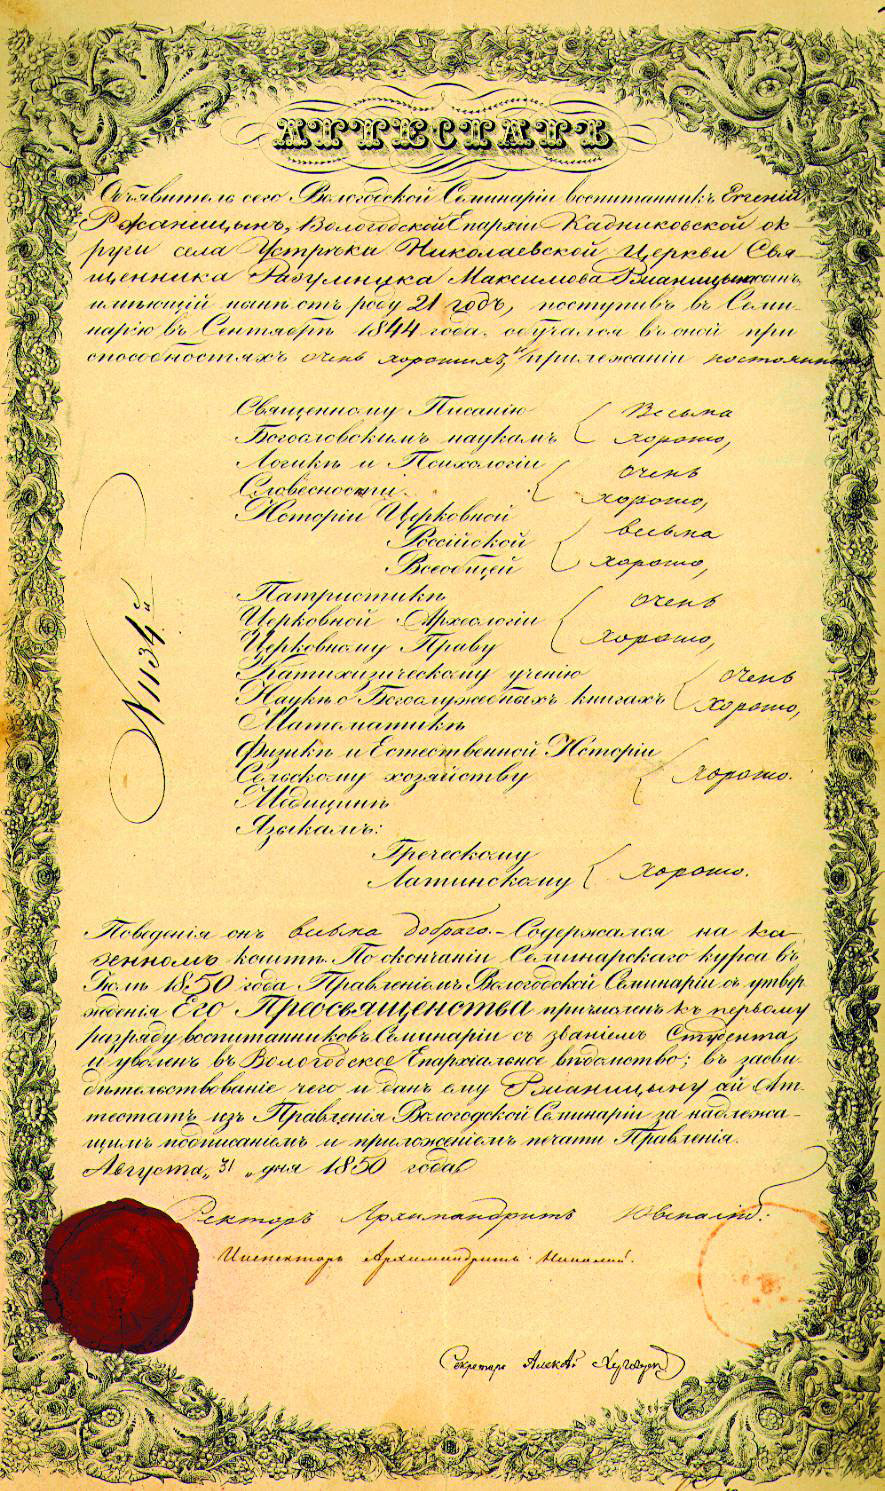 Аттестат выпускника Вологодской духовной семинарии Е. Р. Ржаницына. 31 августа 1850 г.